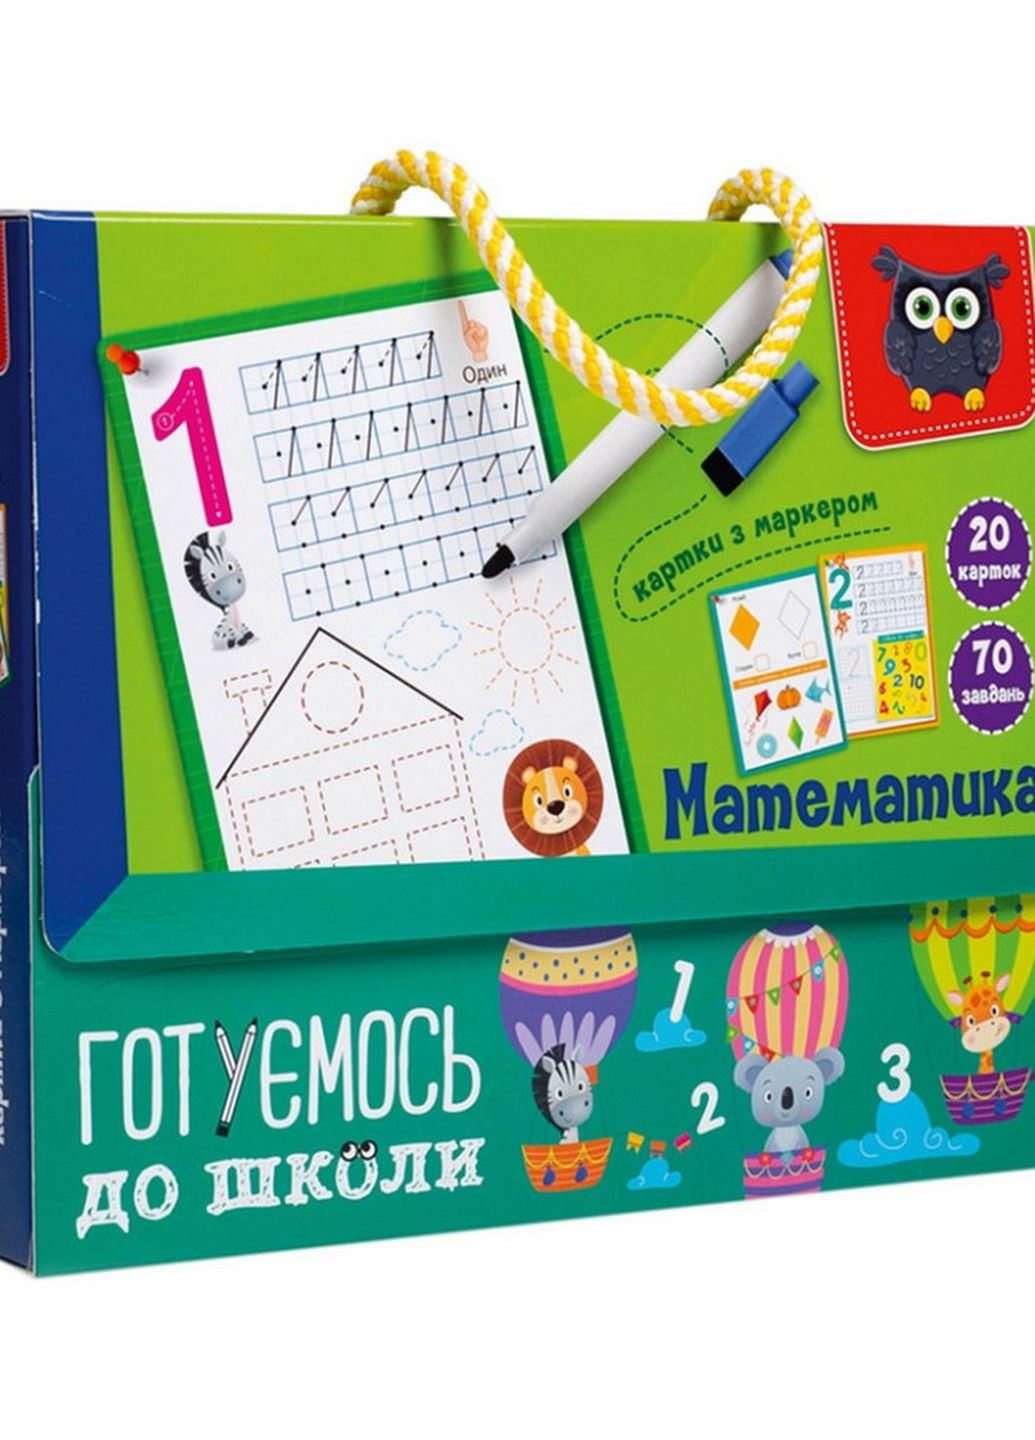 Картки з маркером "Готуємось до школи: Математика" VT5010-22 Укр Vladi toys (276906582)